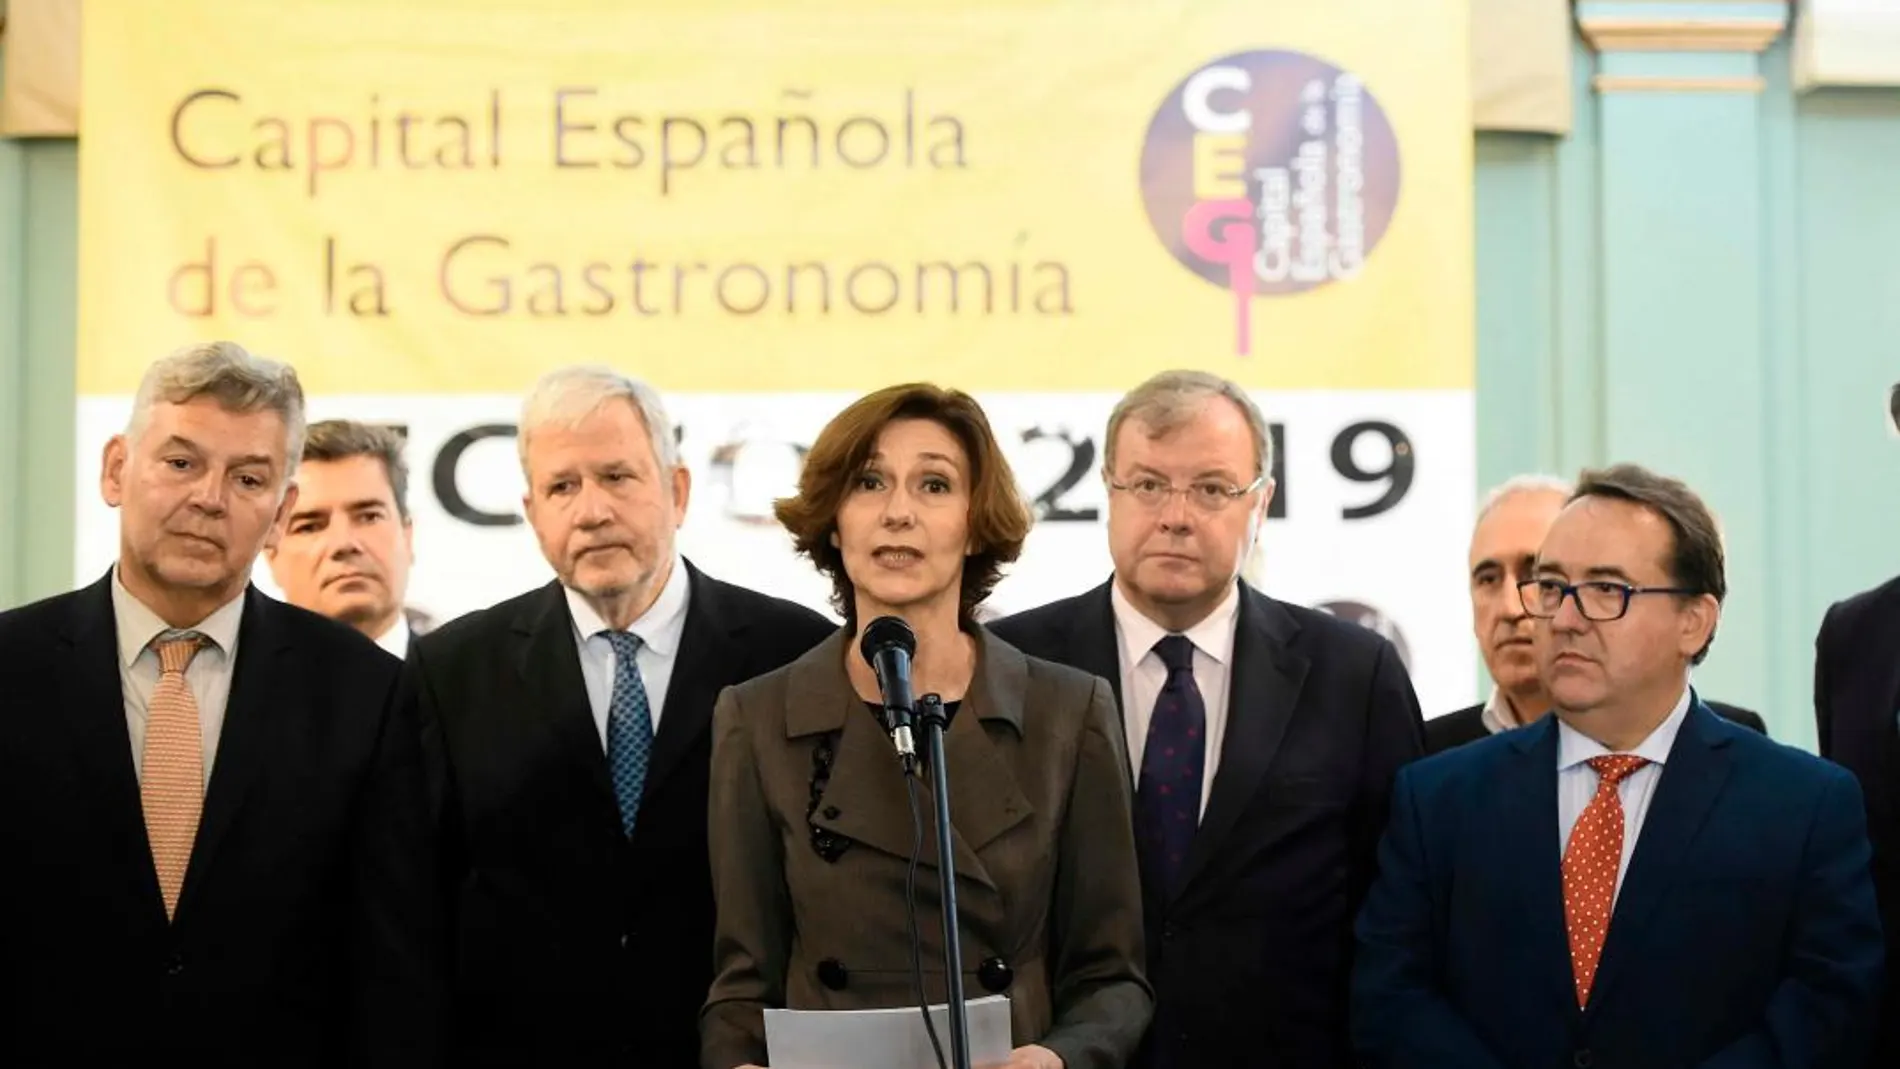 La secretaria de Estado de Turismo, Isabel Oliver, da lectura del fallo en el acto de proclamación de la Capital Española de la Gastronomía / Foto: Efe